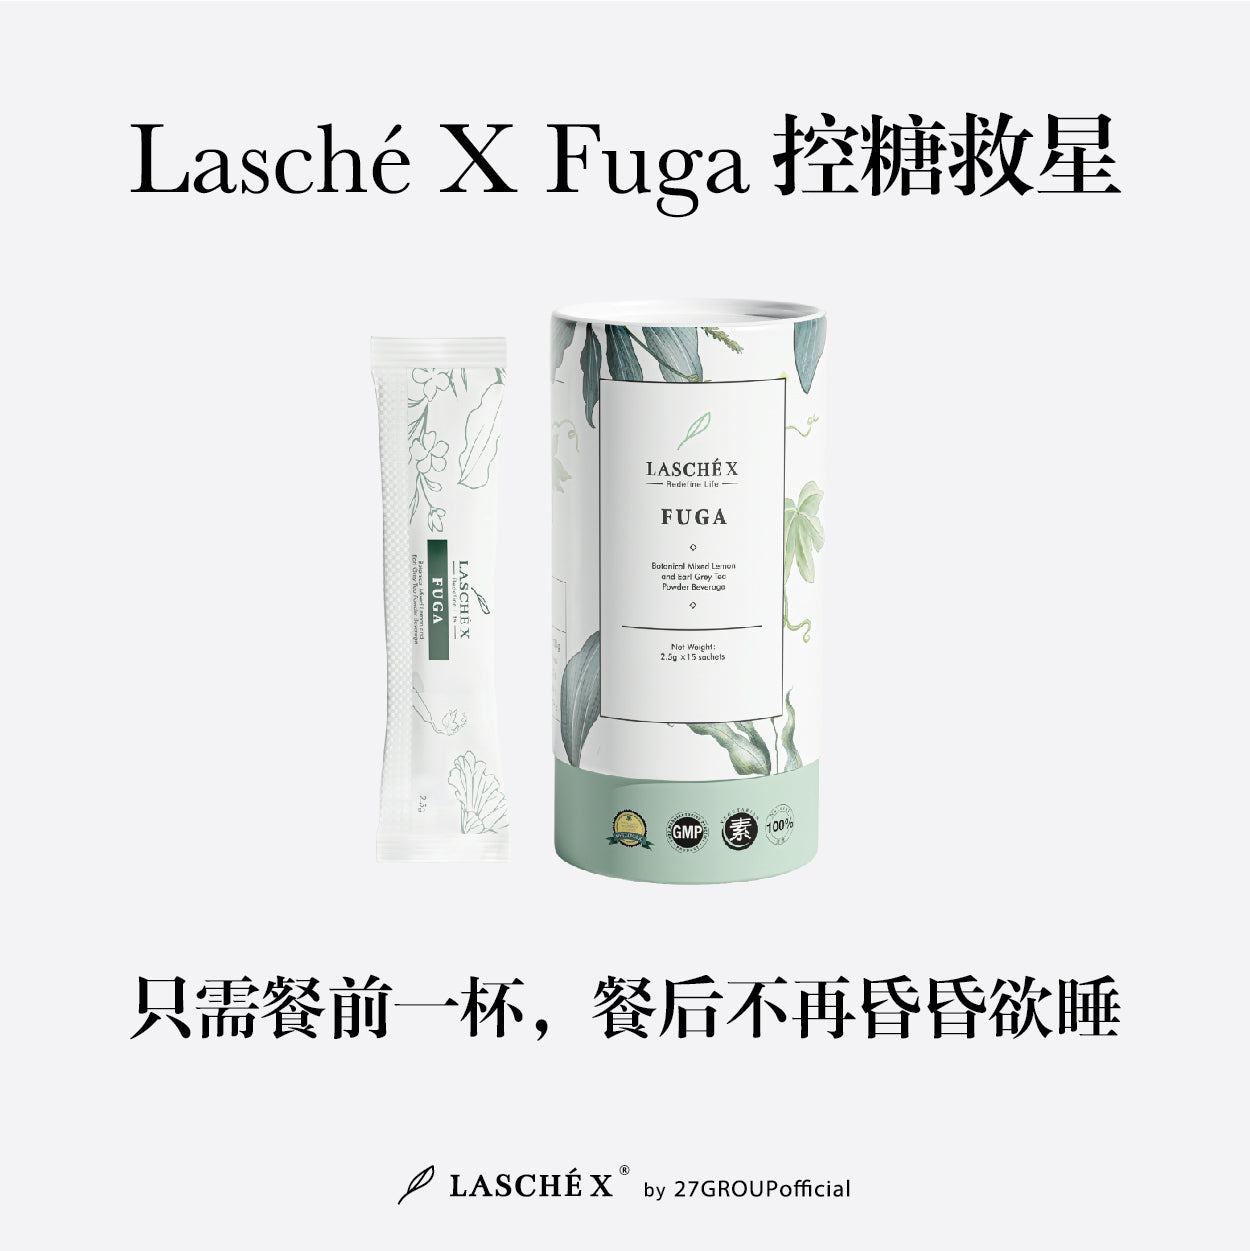 LaschéX Fuga 餐前服用帮助控糖